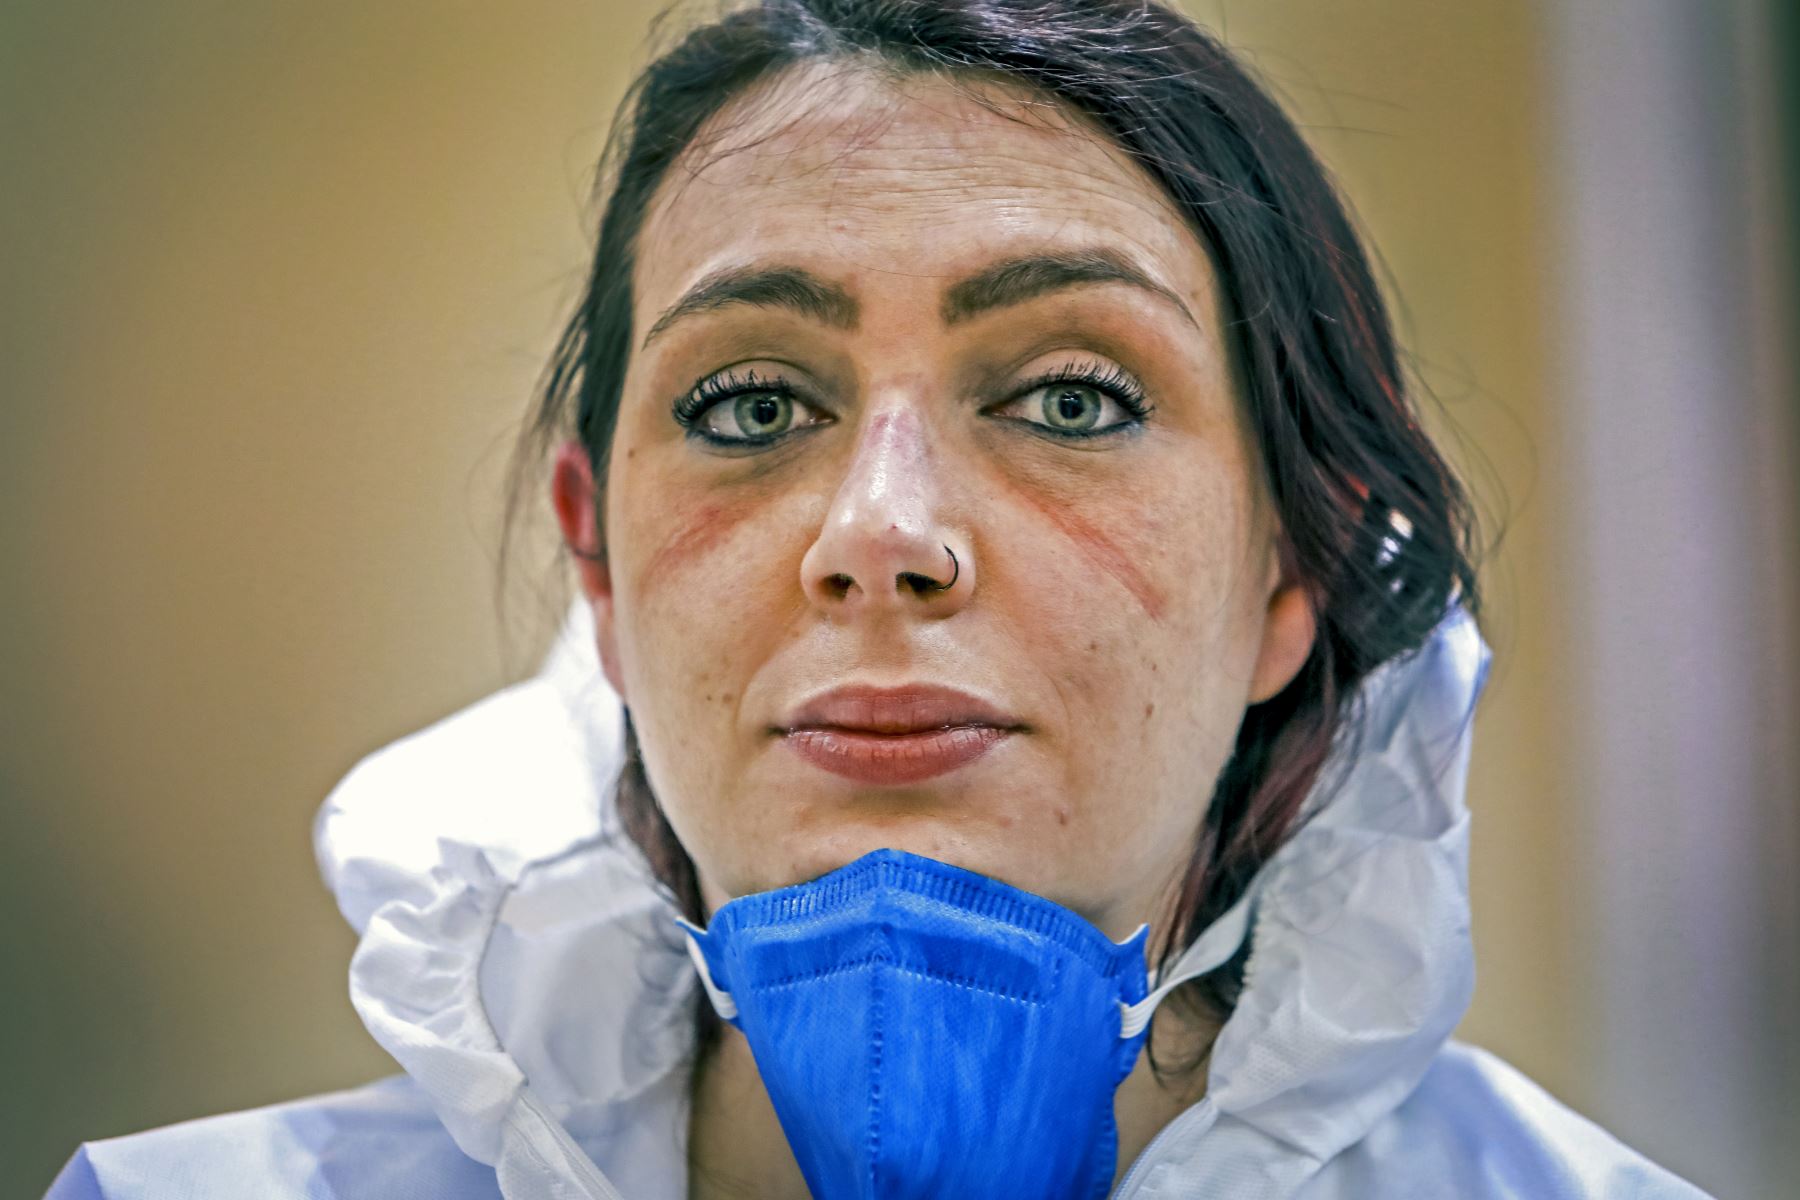 La enfermera brasileña Jessica Marques, de 29 años, posa para una fotografía que muestra los moretones en su rostro por el uso de equipo de protección durante un descanso entre turnos en la Unidad de Cuidados Intensivos del Hospital Santa Casa de Misericordia en Porto Alegre, Brasil, en medio de la nueva pandemia de coronavirus. Foto: AFP